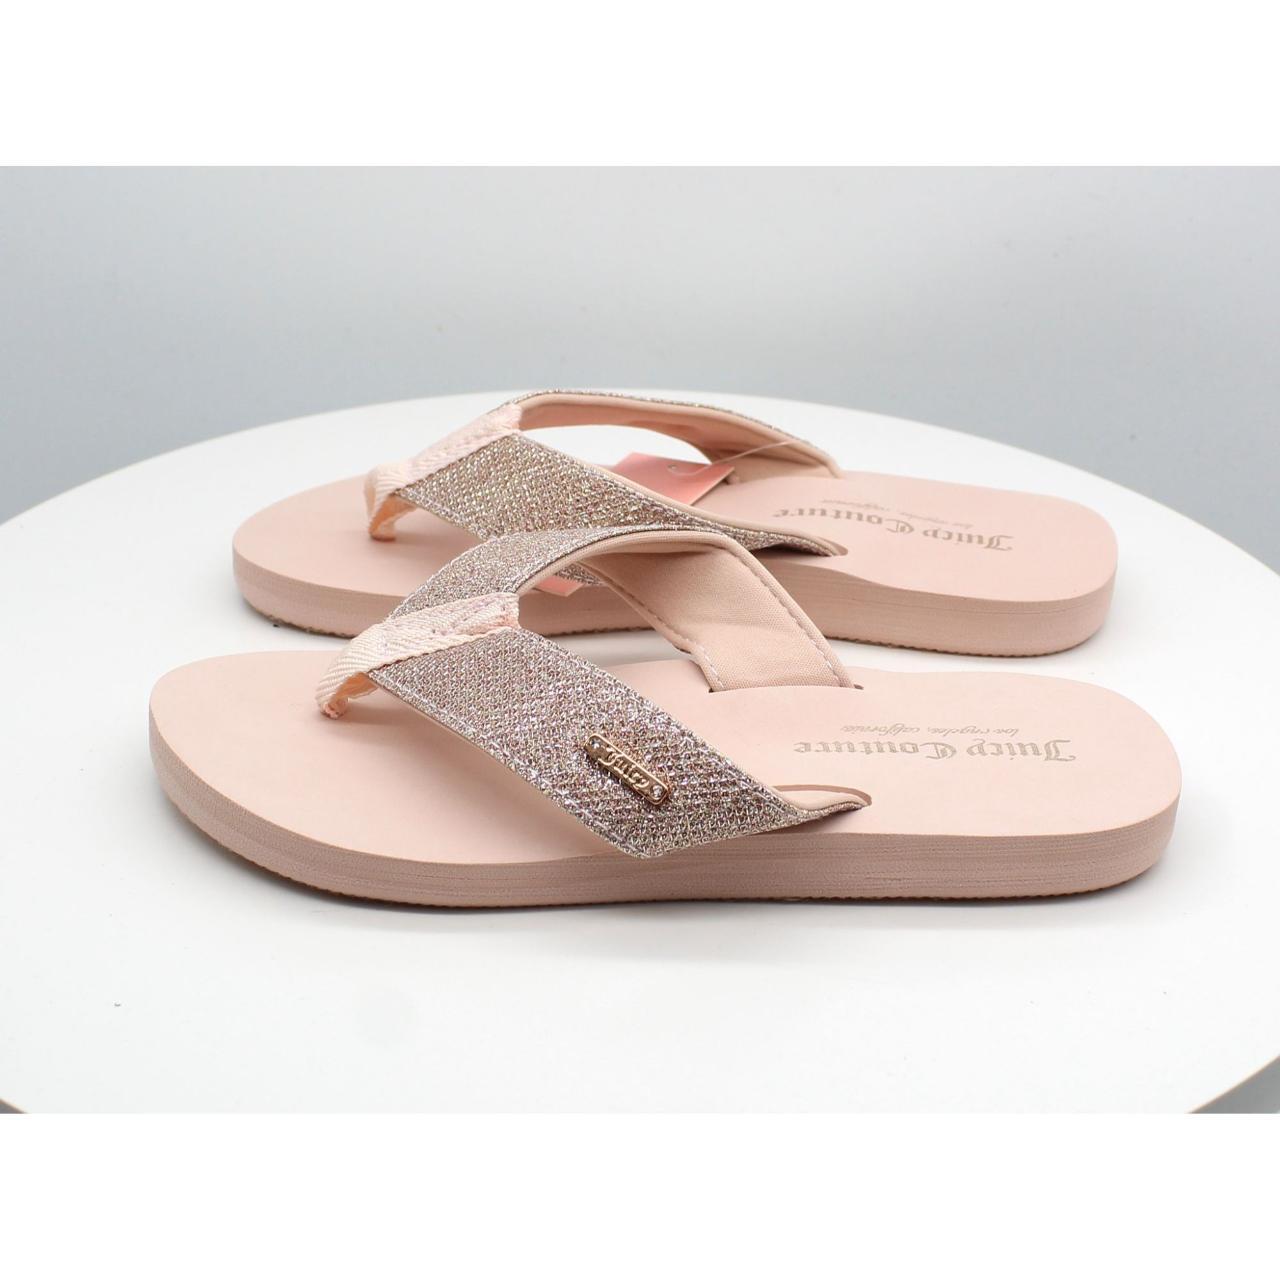 Juicy Couture Sparks Women's Flip Flop Sandals